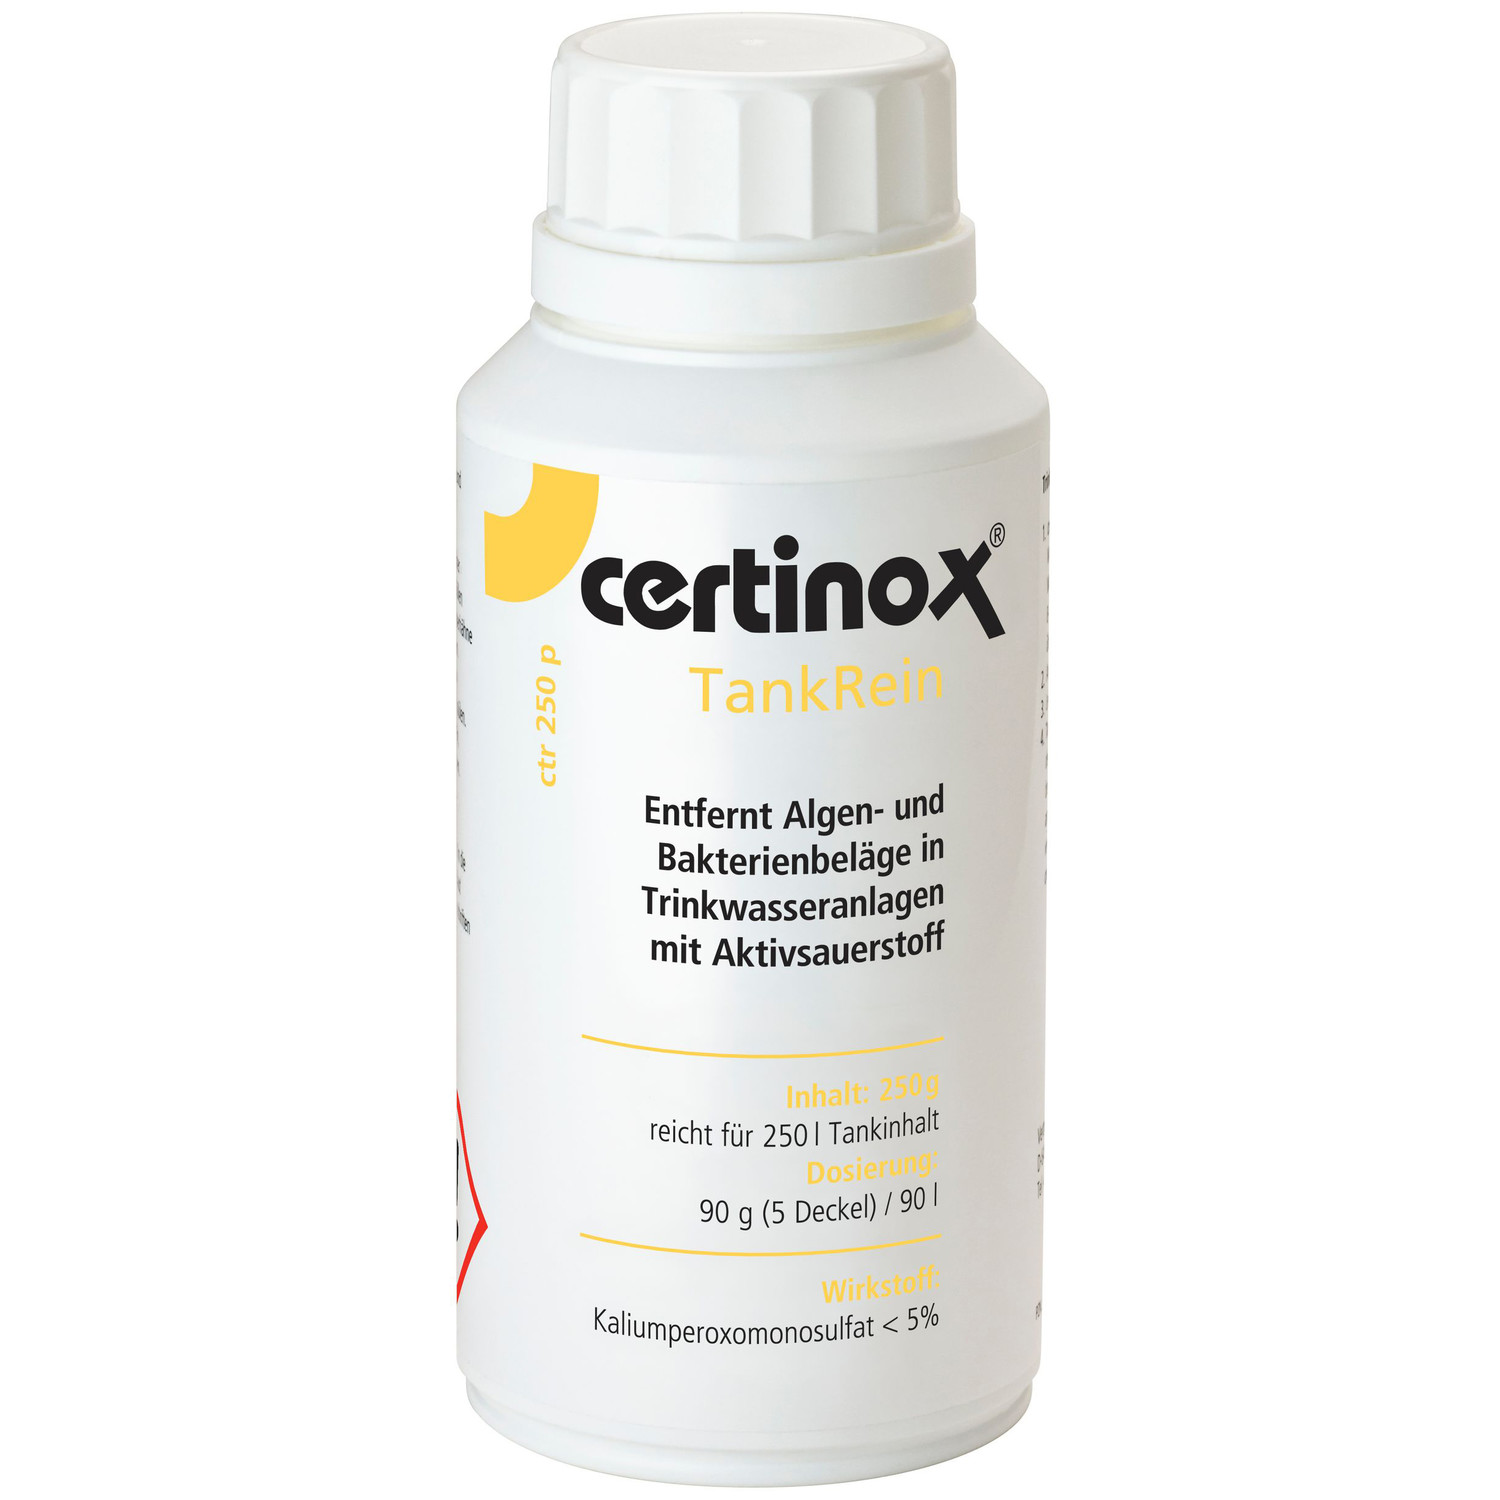 Certinox TankRein ctr 250 P gegen Algen und Bakterienbeläge in Trinkwasseranlagen